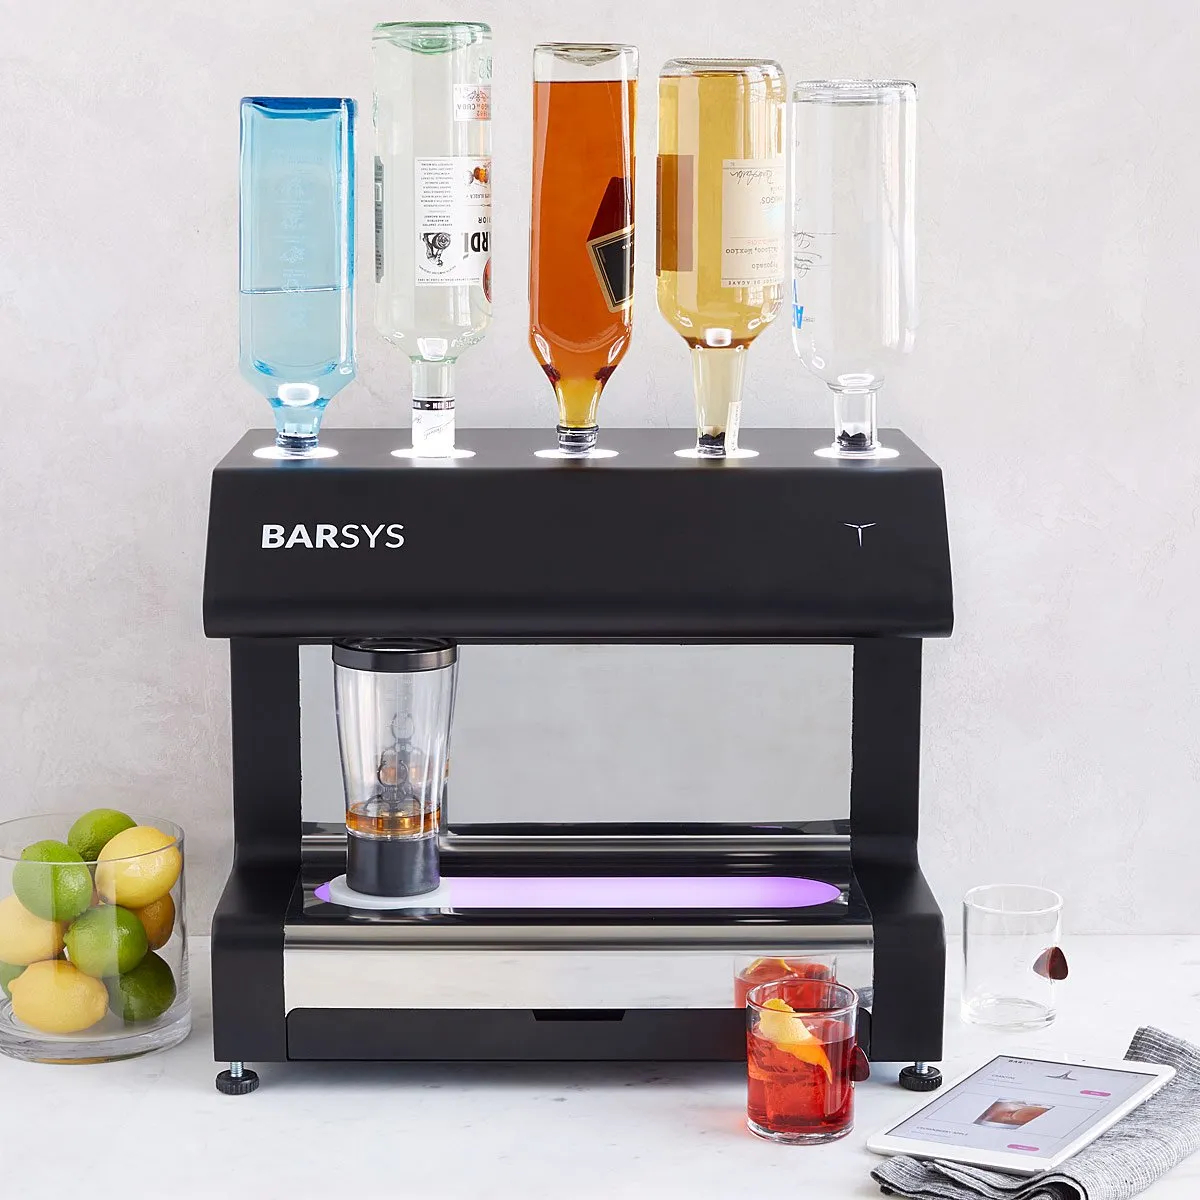 Barsys 2.0+ Robot Bartender